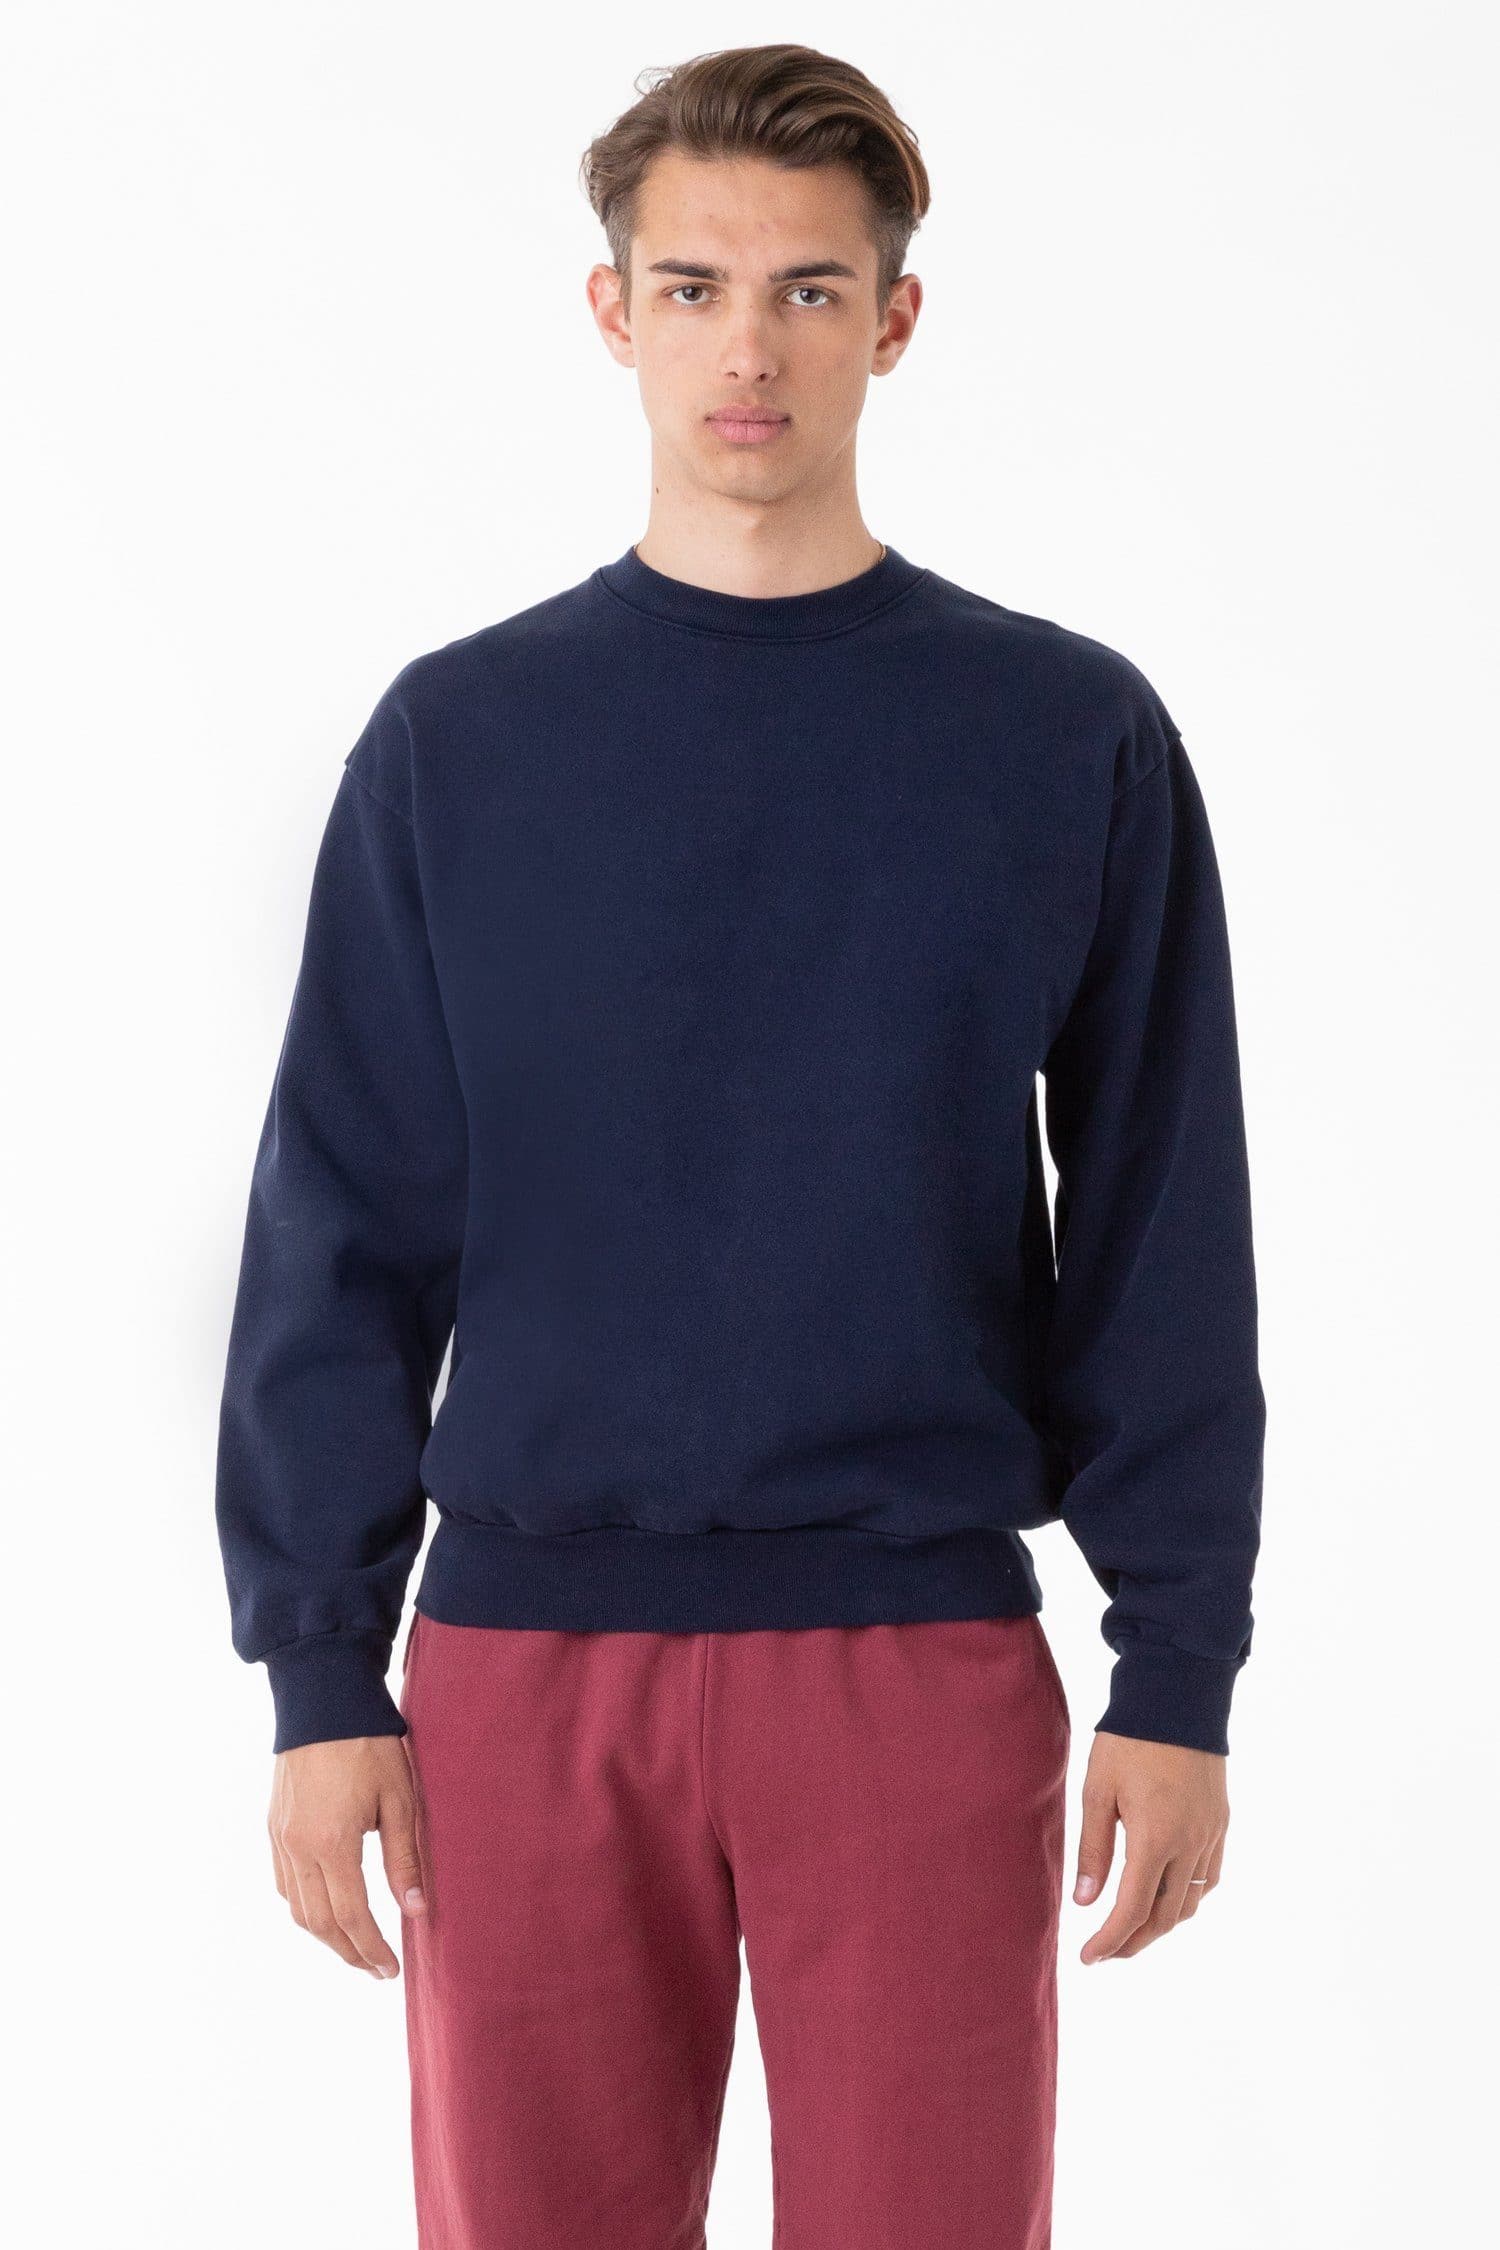 Los Angeles Apparel - HF-07 Heavy Fleece Pullover Crewneck Sweatshirt – Sky  Sportswear